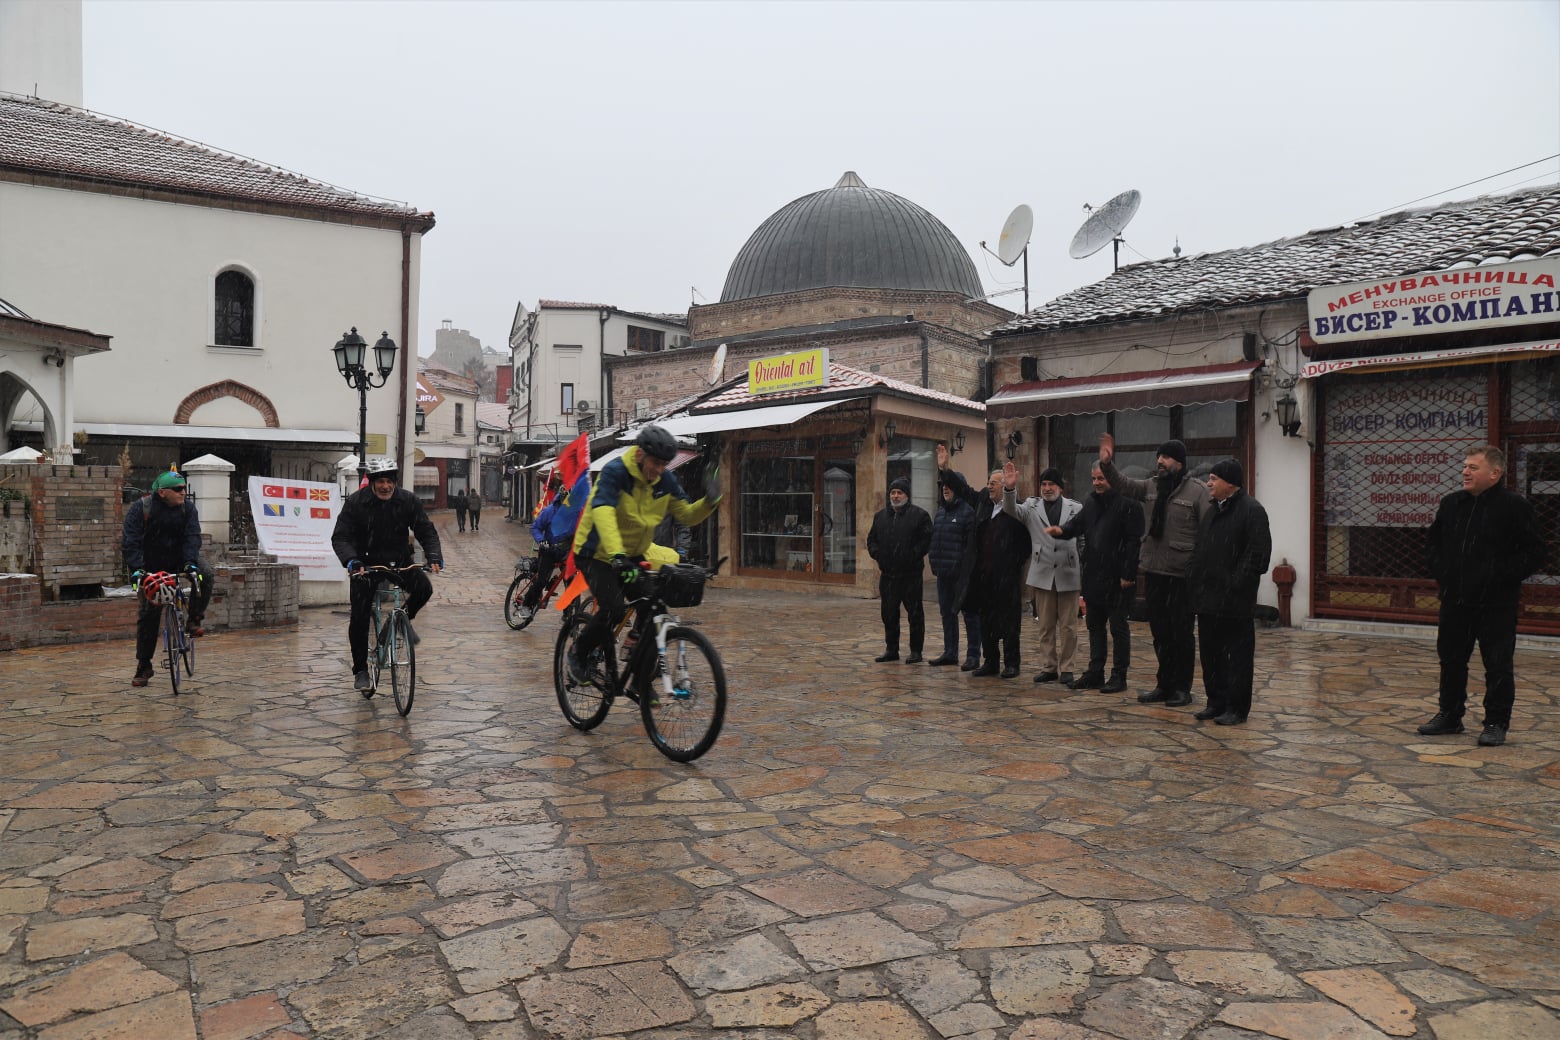 Balkanlı gönüllüler ülkelerinden aldıkları emanetleri bisikletlerle Çanakkale’ye götürüyor